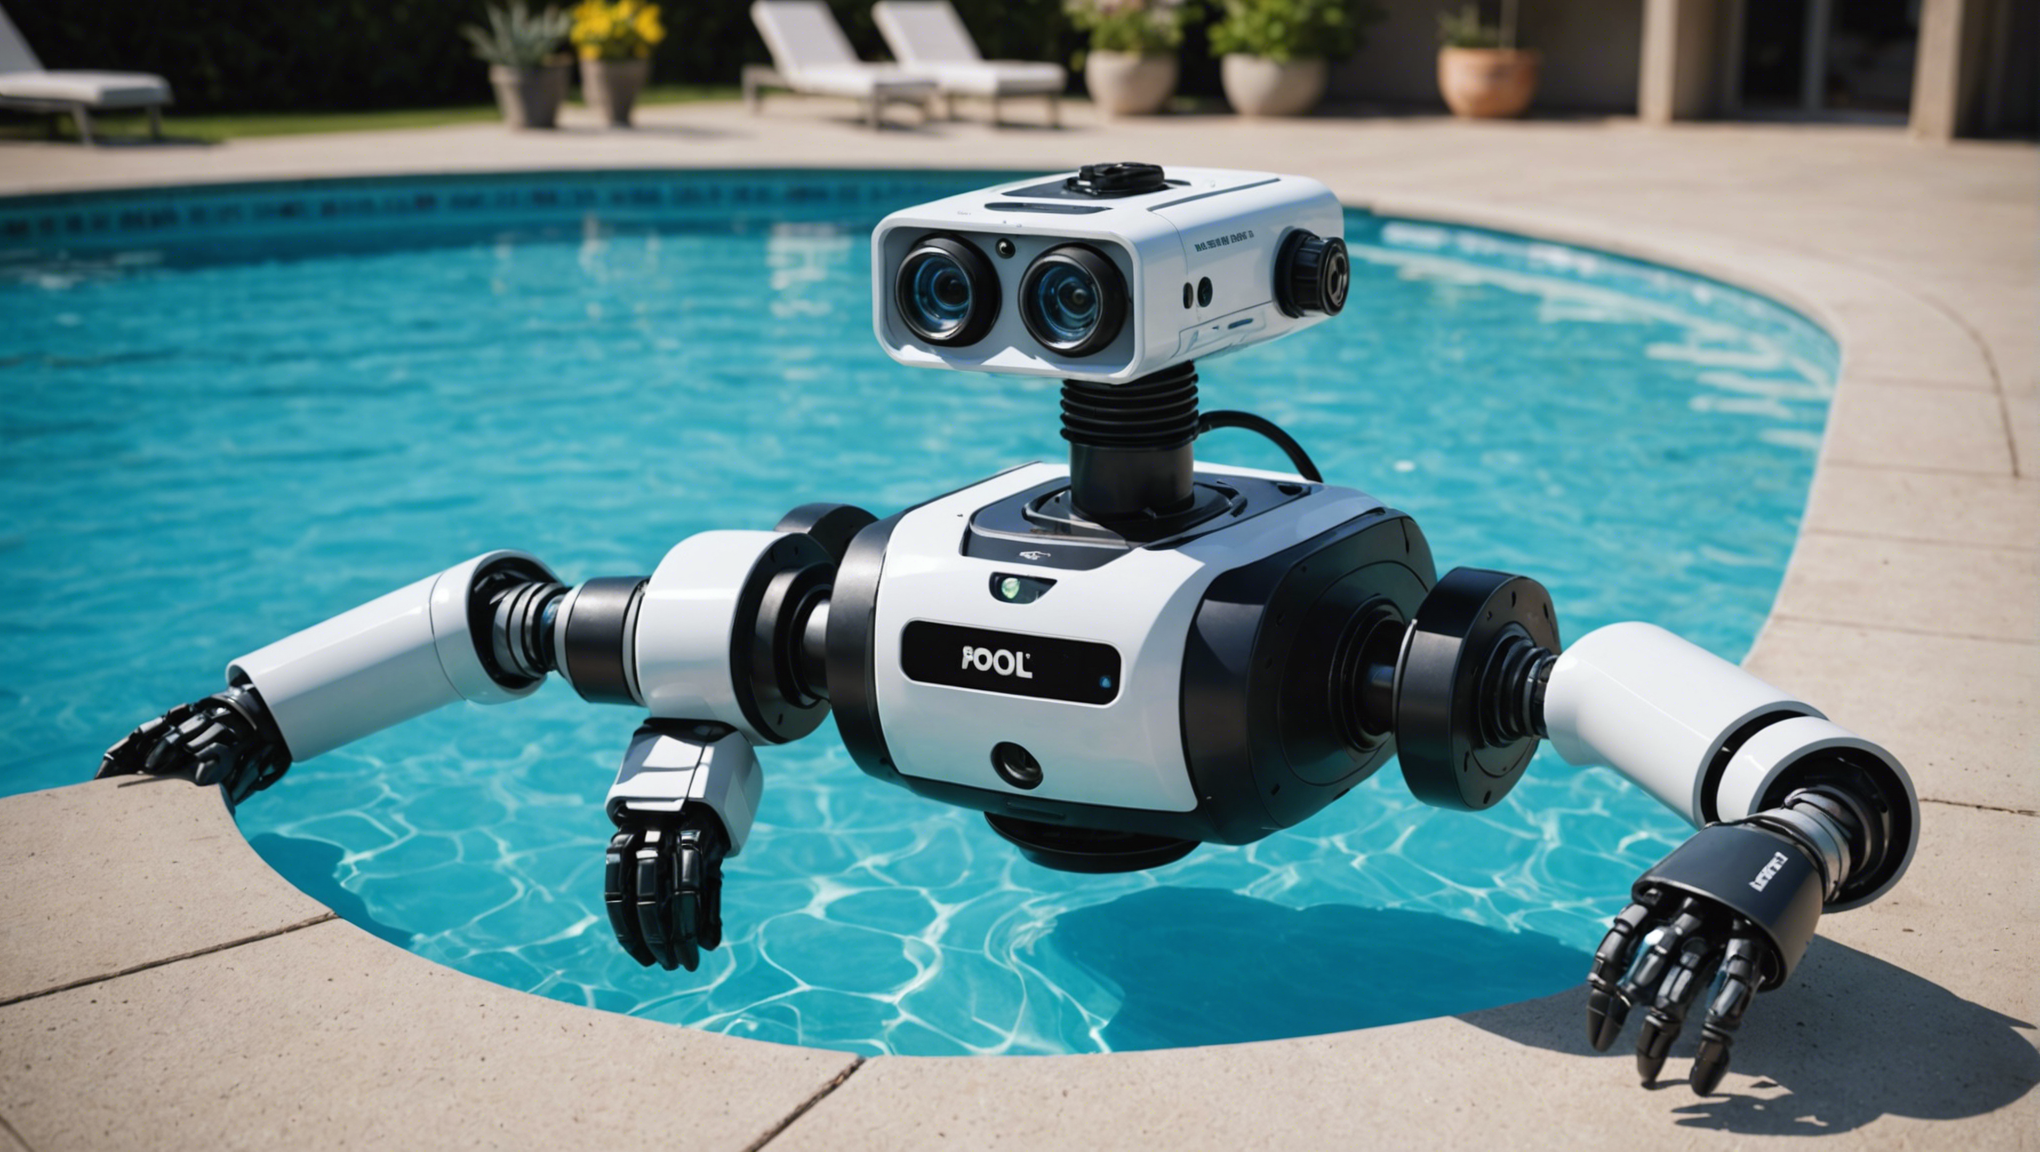 découvrez l'importance de la réinitialisation périodique des robots de piscine pour assurer leur bon fonctionnement et prolonger leur durée de vie.